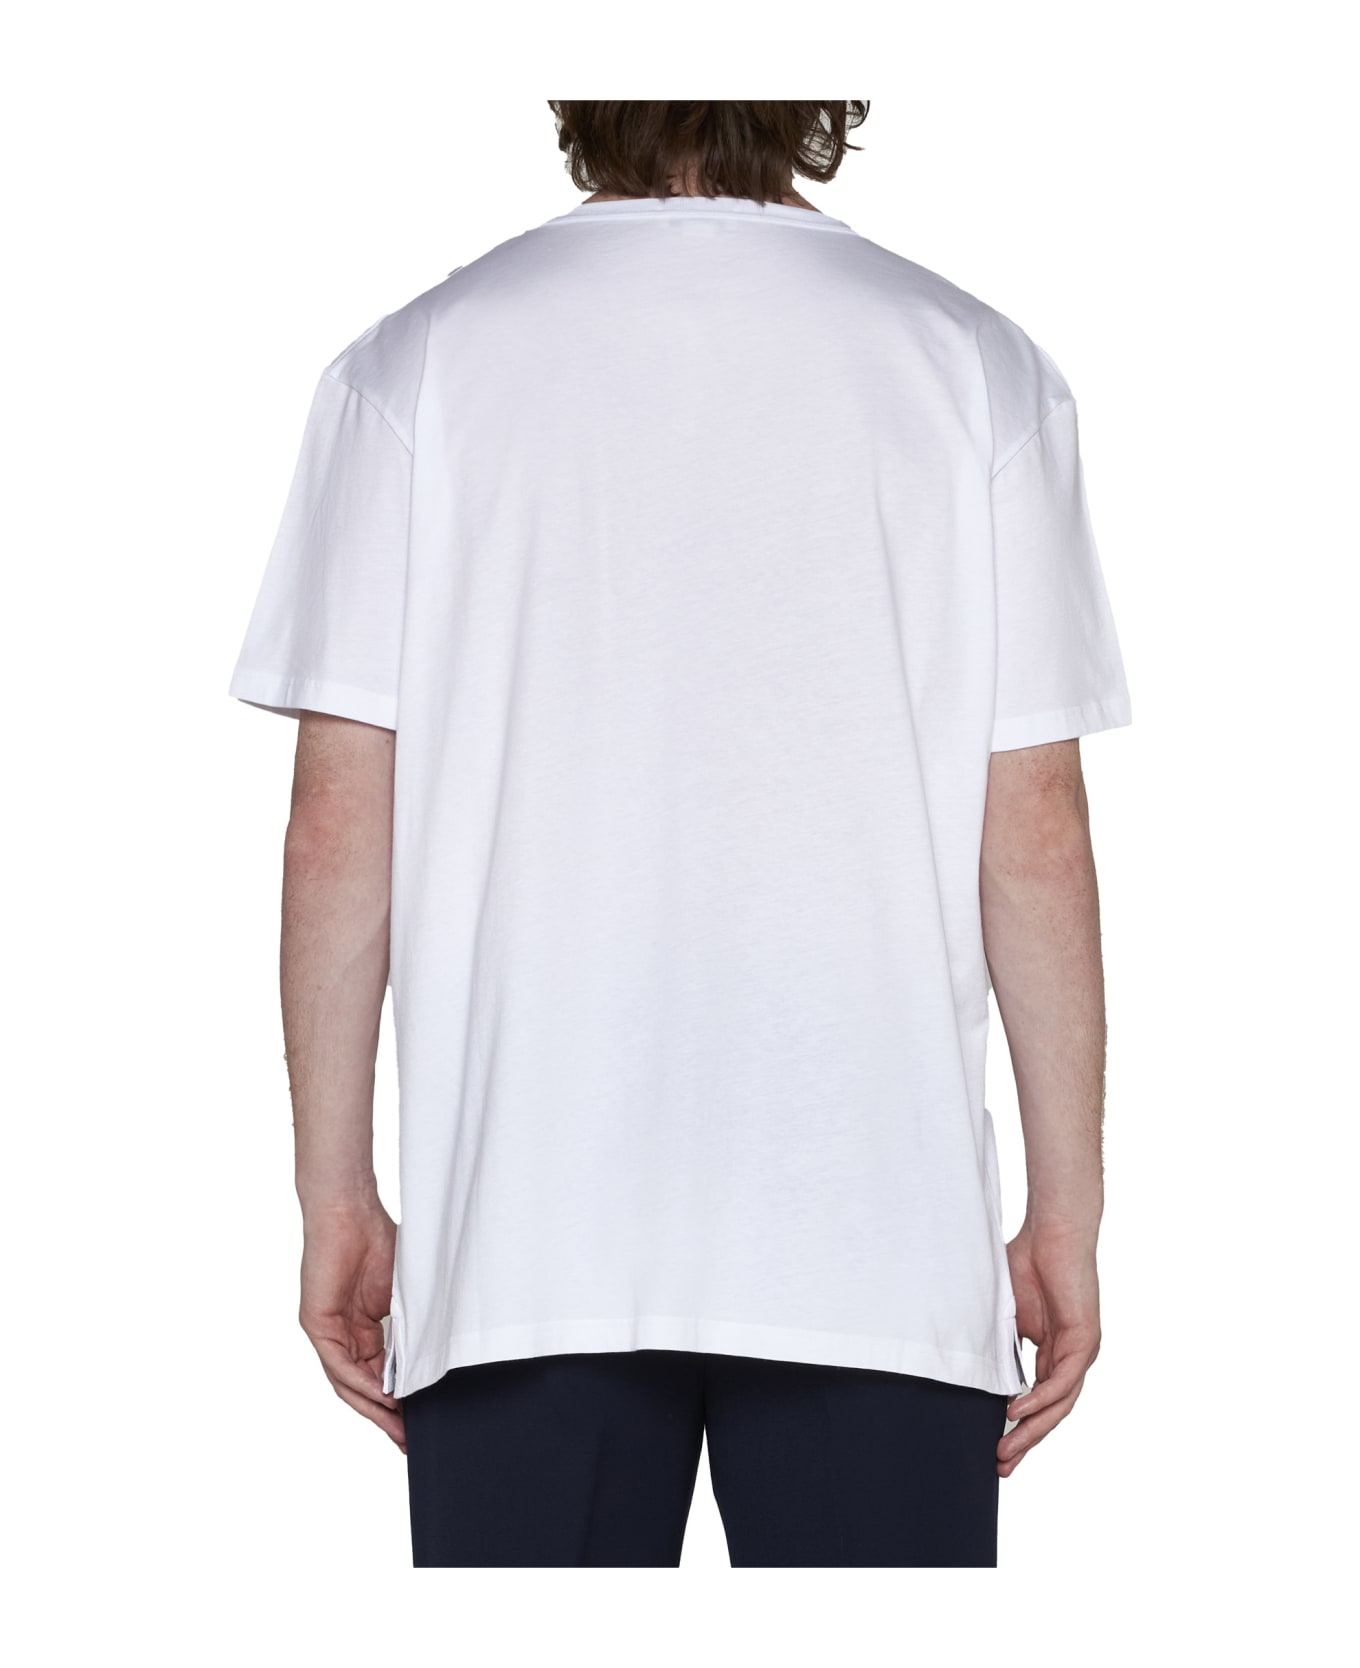 Alexander McQueen Skull Print T-shirt - White